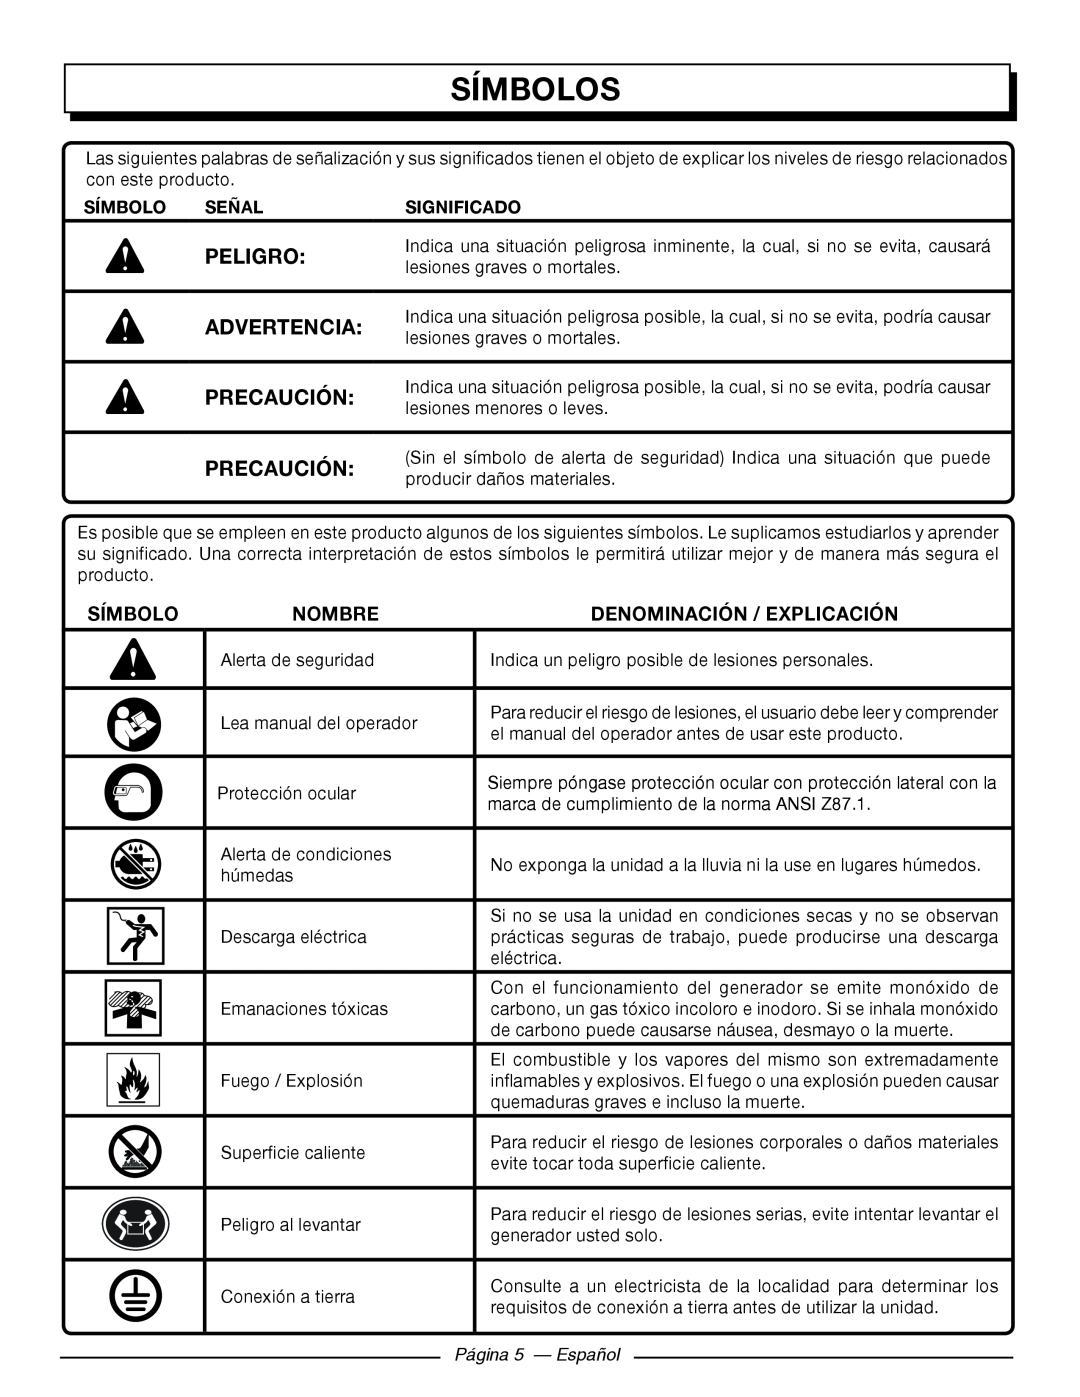 Homelite HGCA5700 Símbolos, Peligro, Precaución, Nombre, Denominación / Explicación, Página 5 — Español, Advertencia 